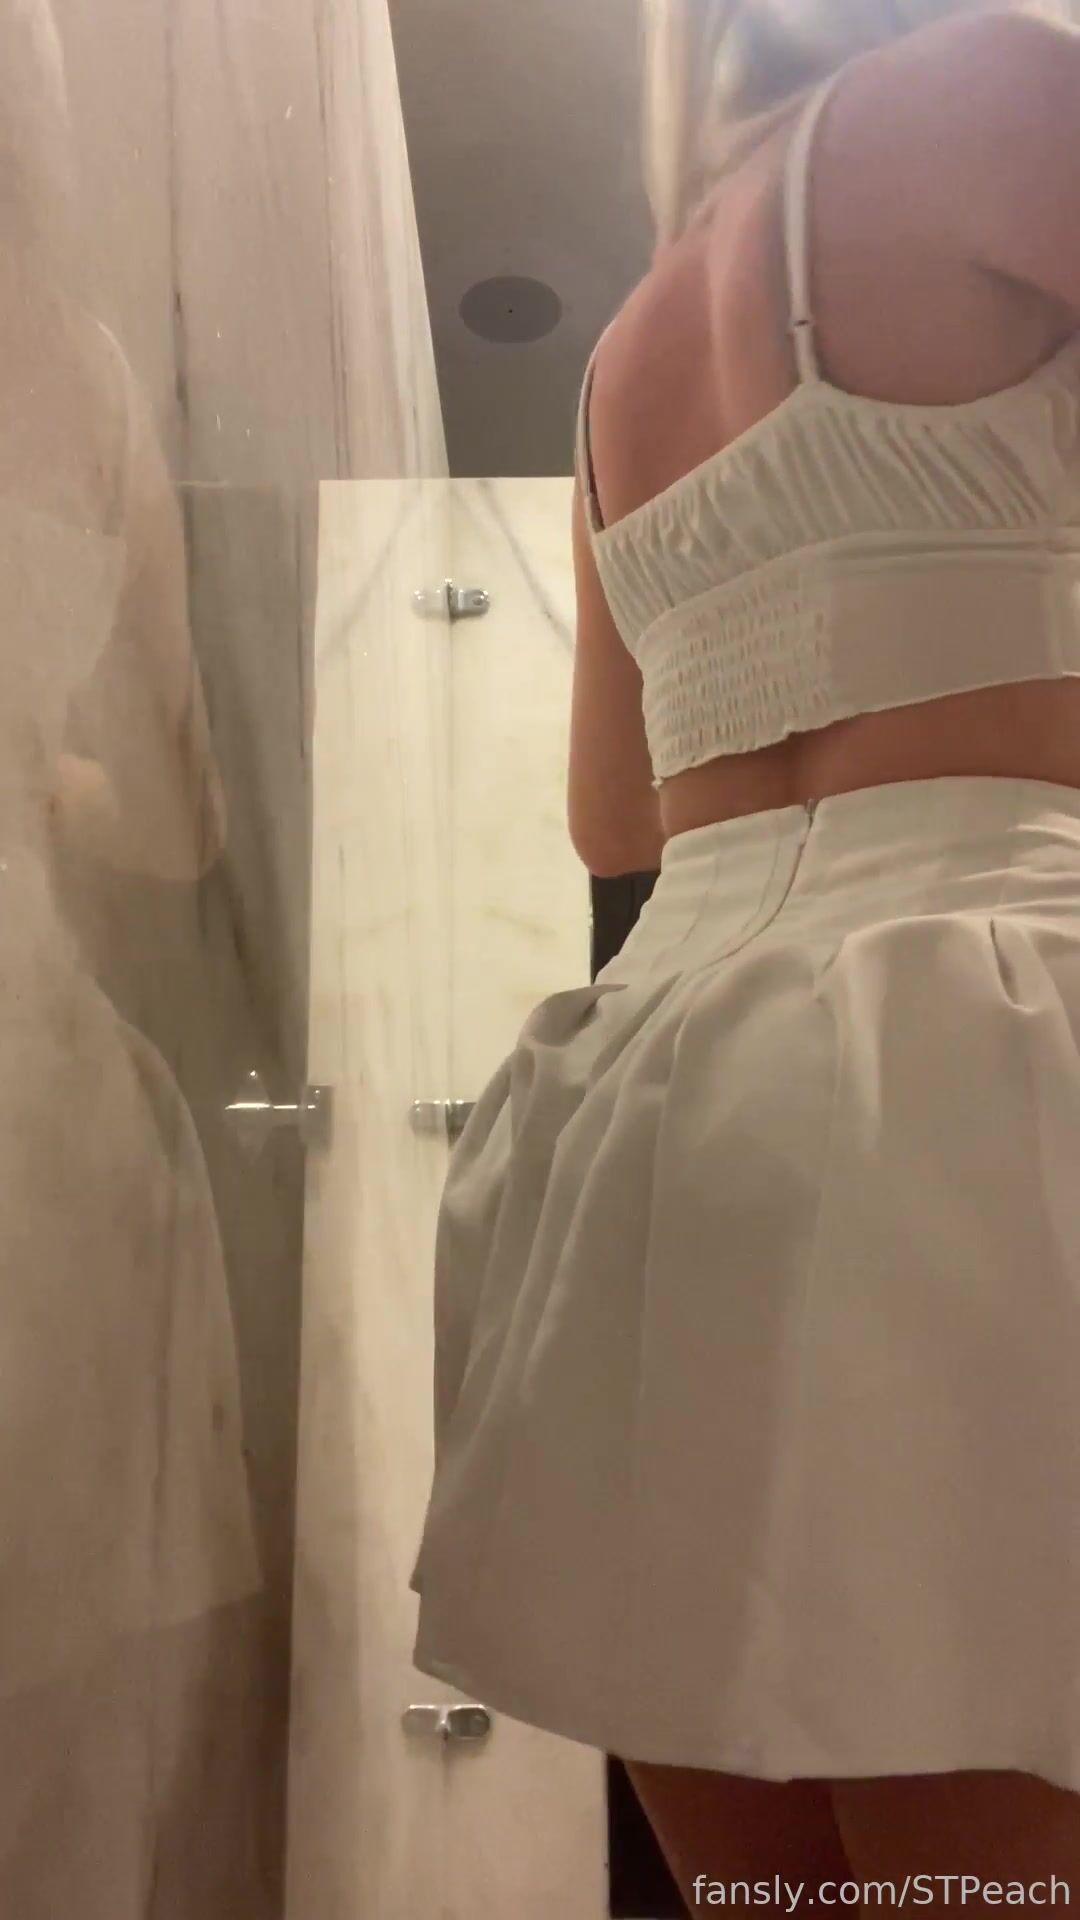 Stpeach Fansly - White skirt in bathroom